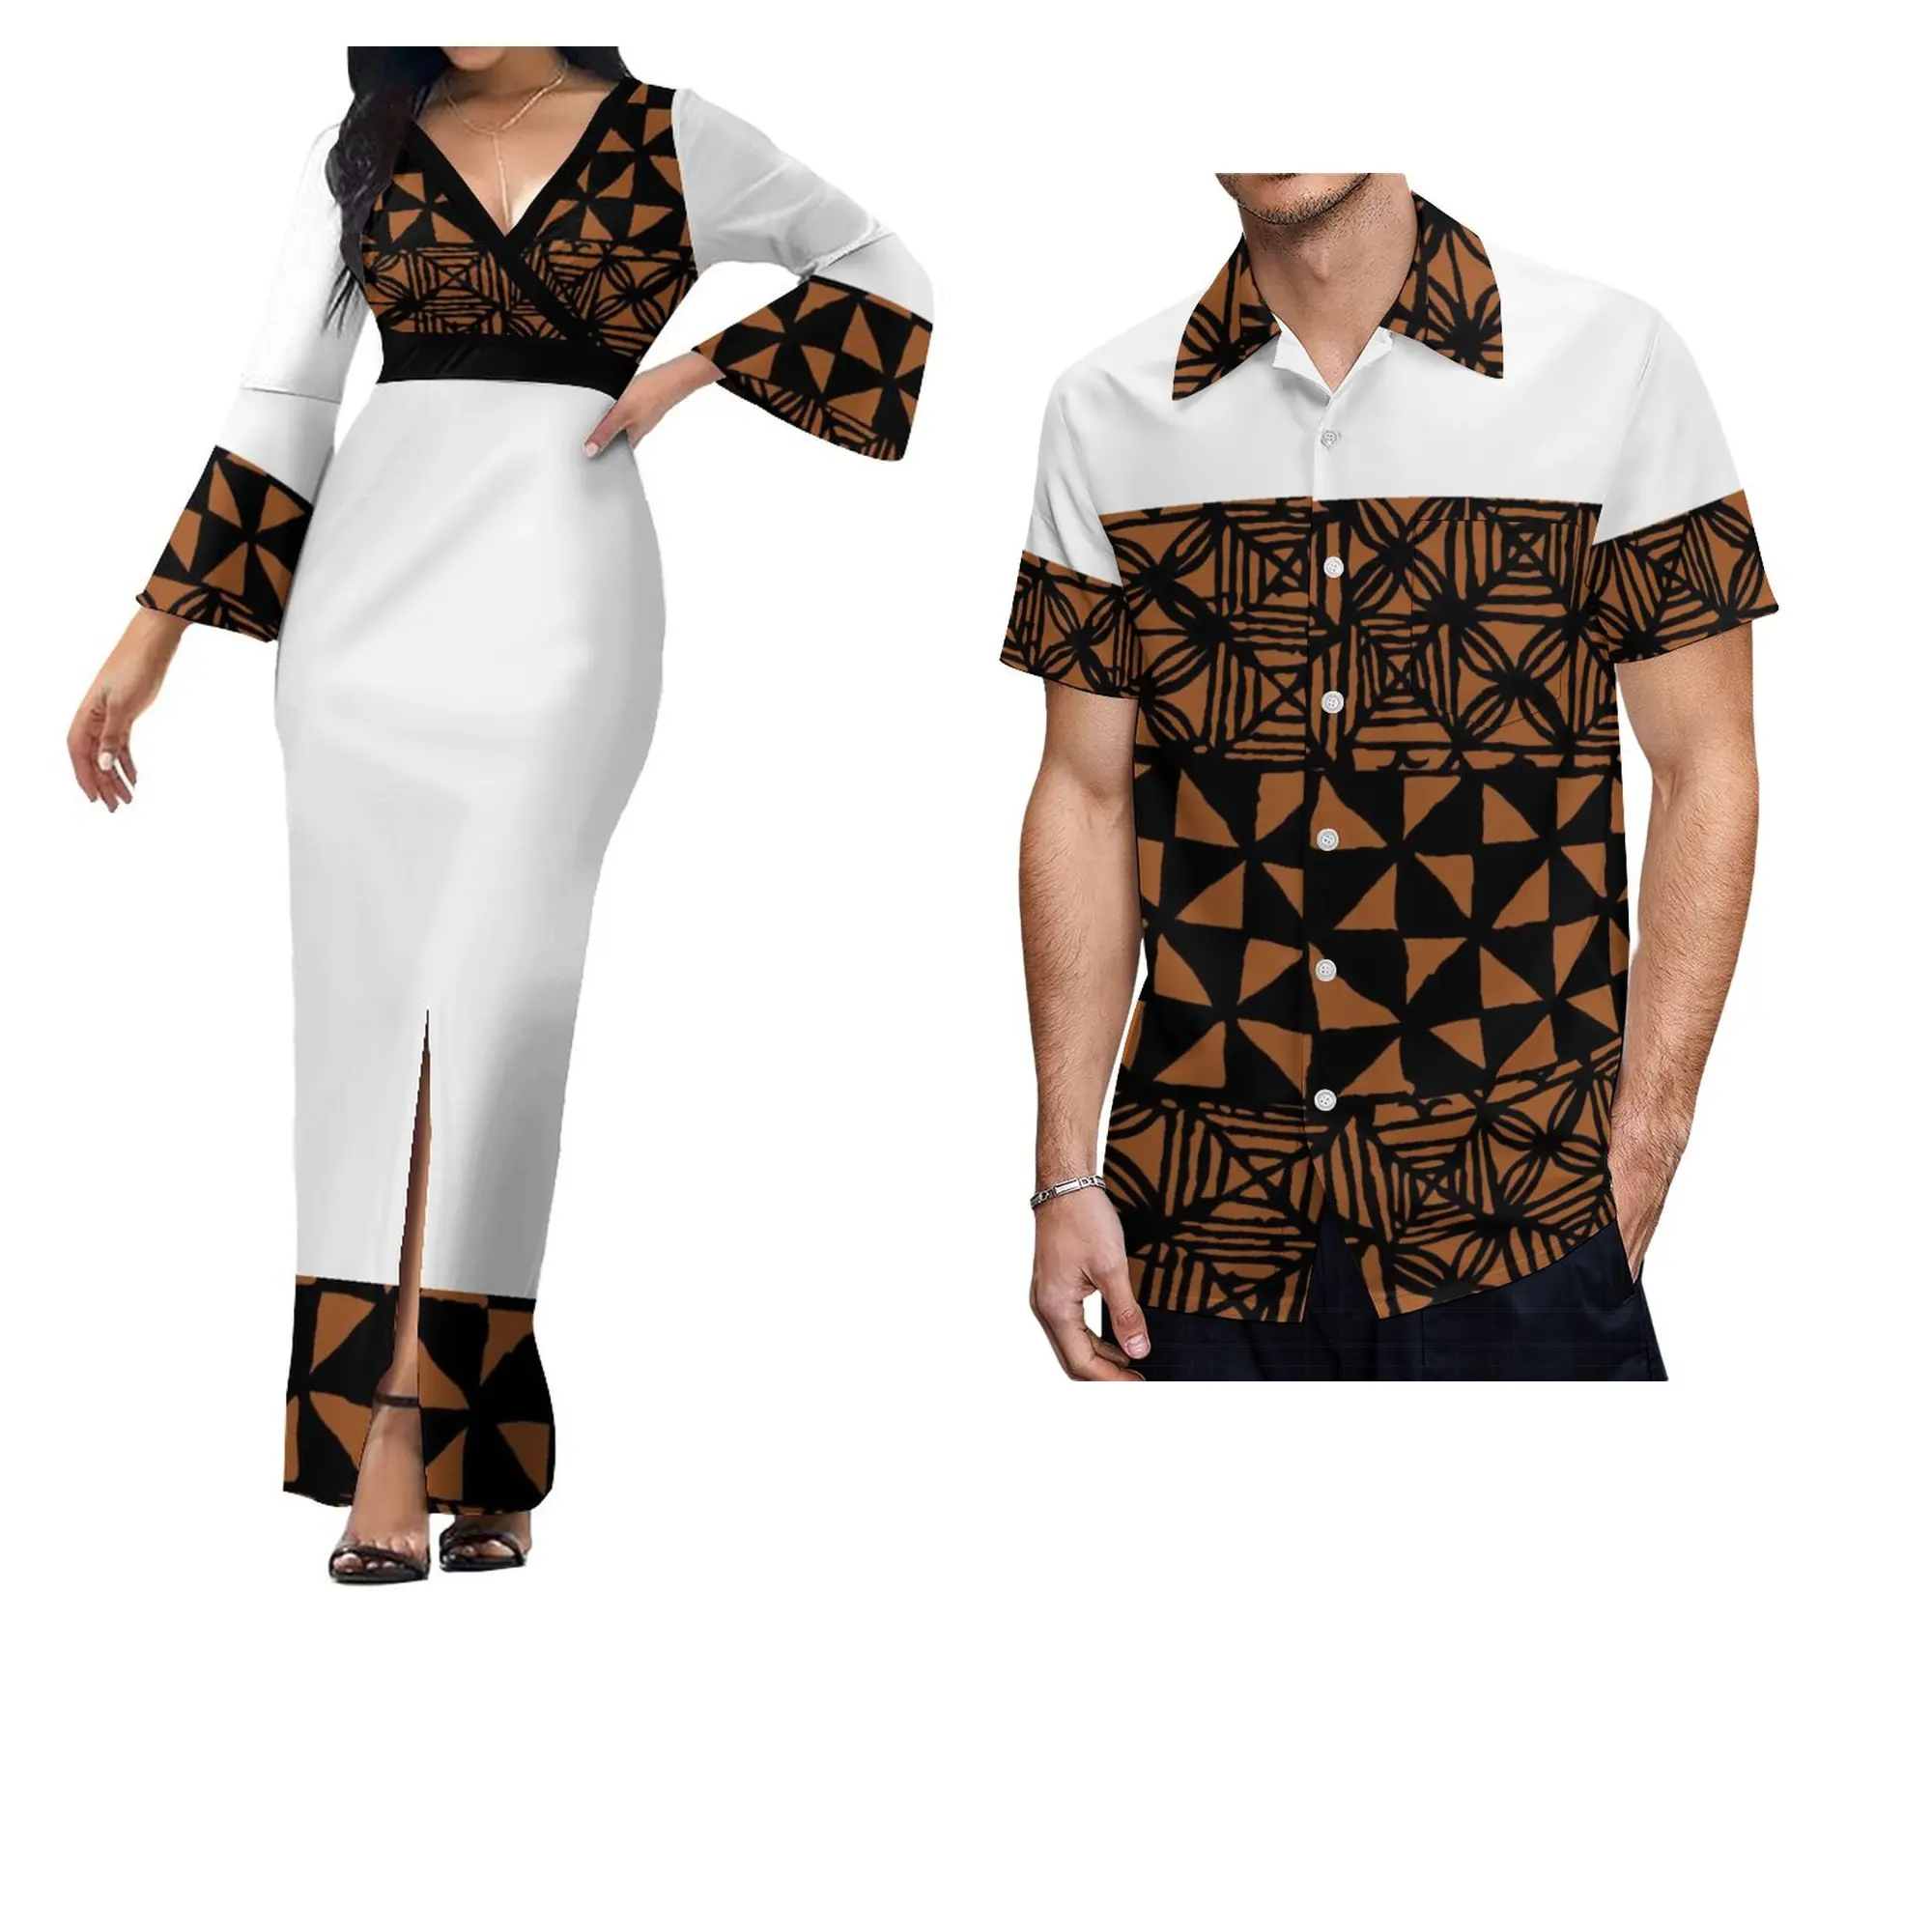 Mejor Precio al por mayor personalizado blanco Domingo polinesio Tonga Tribal mujeres elegante vestido largo a juego camisas para Hombre Ropa de pareja